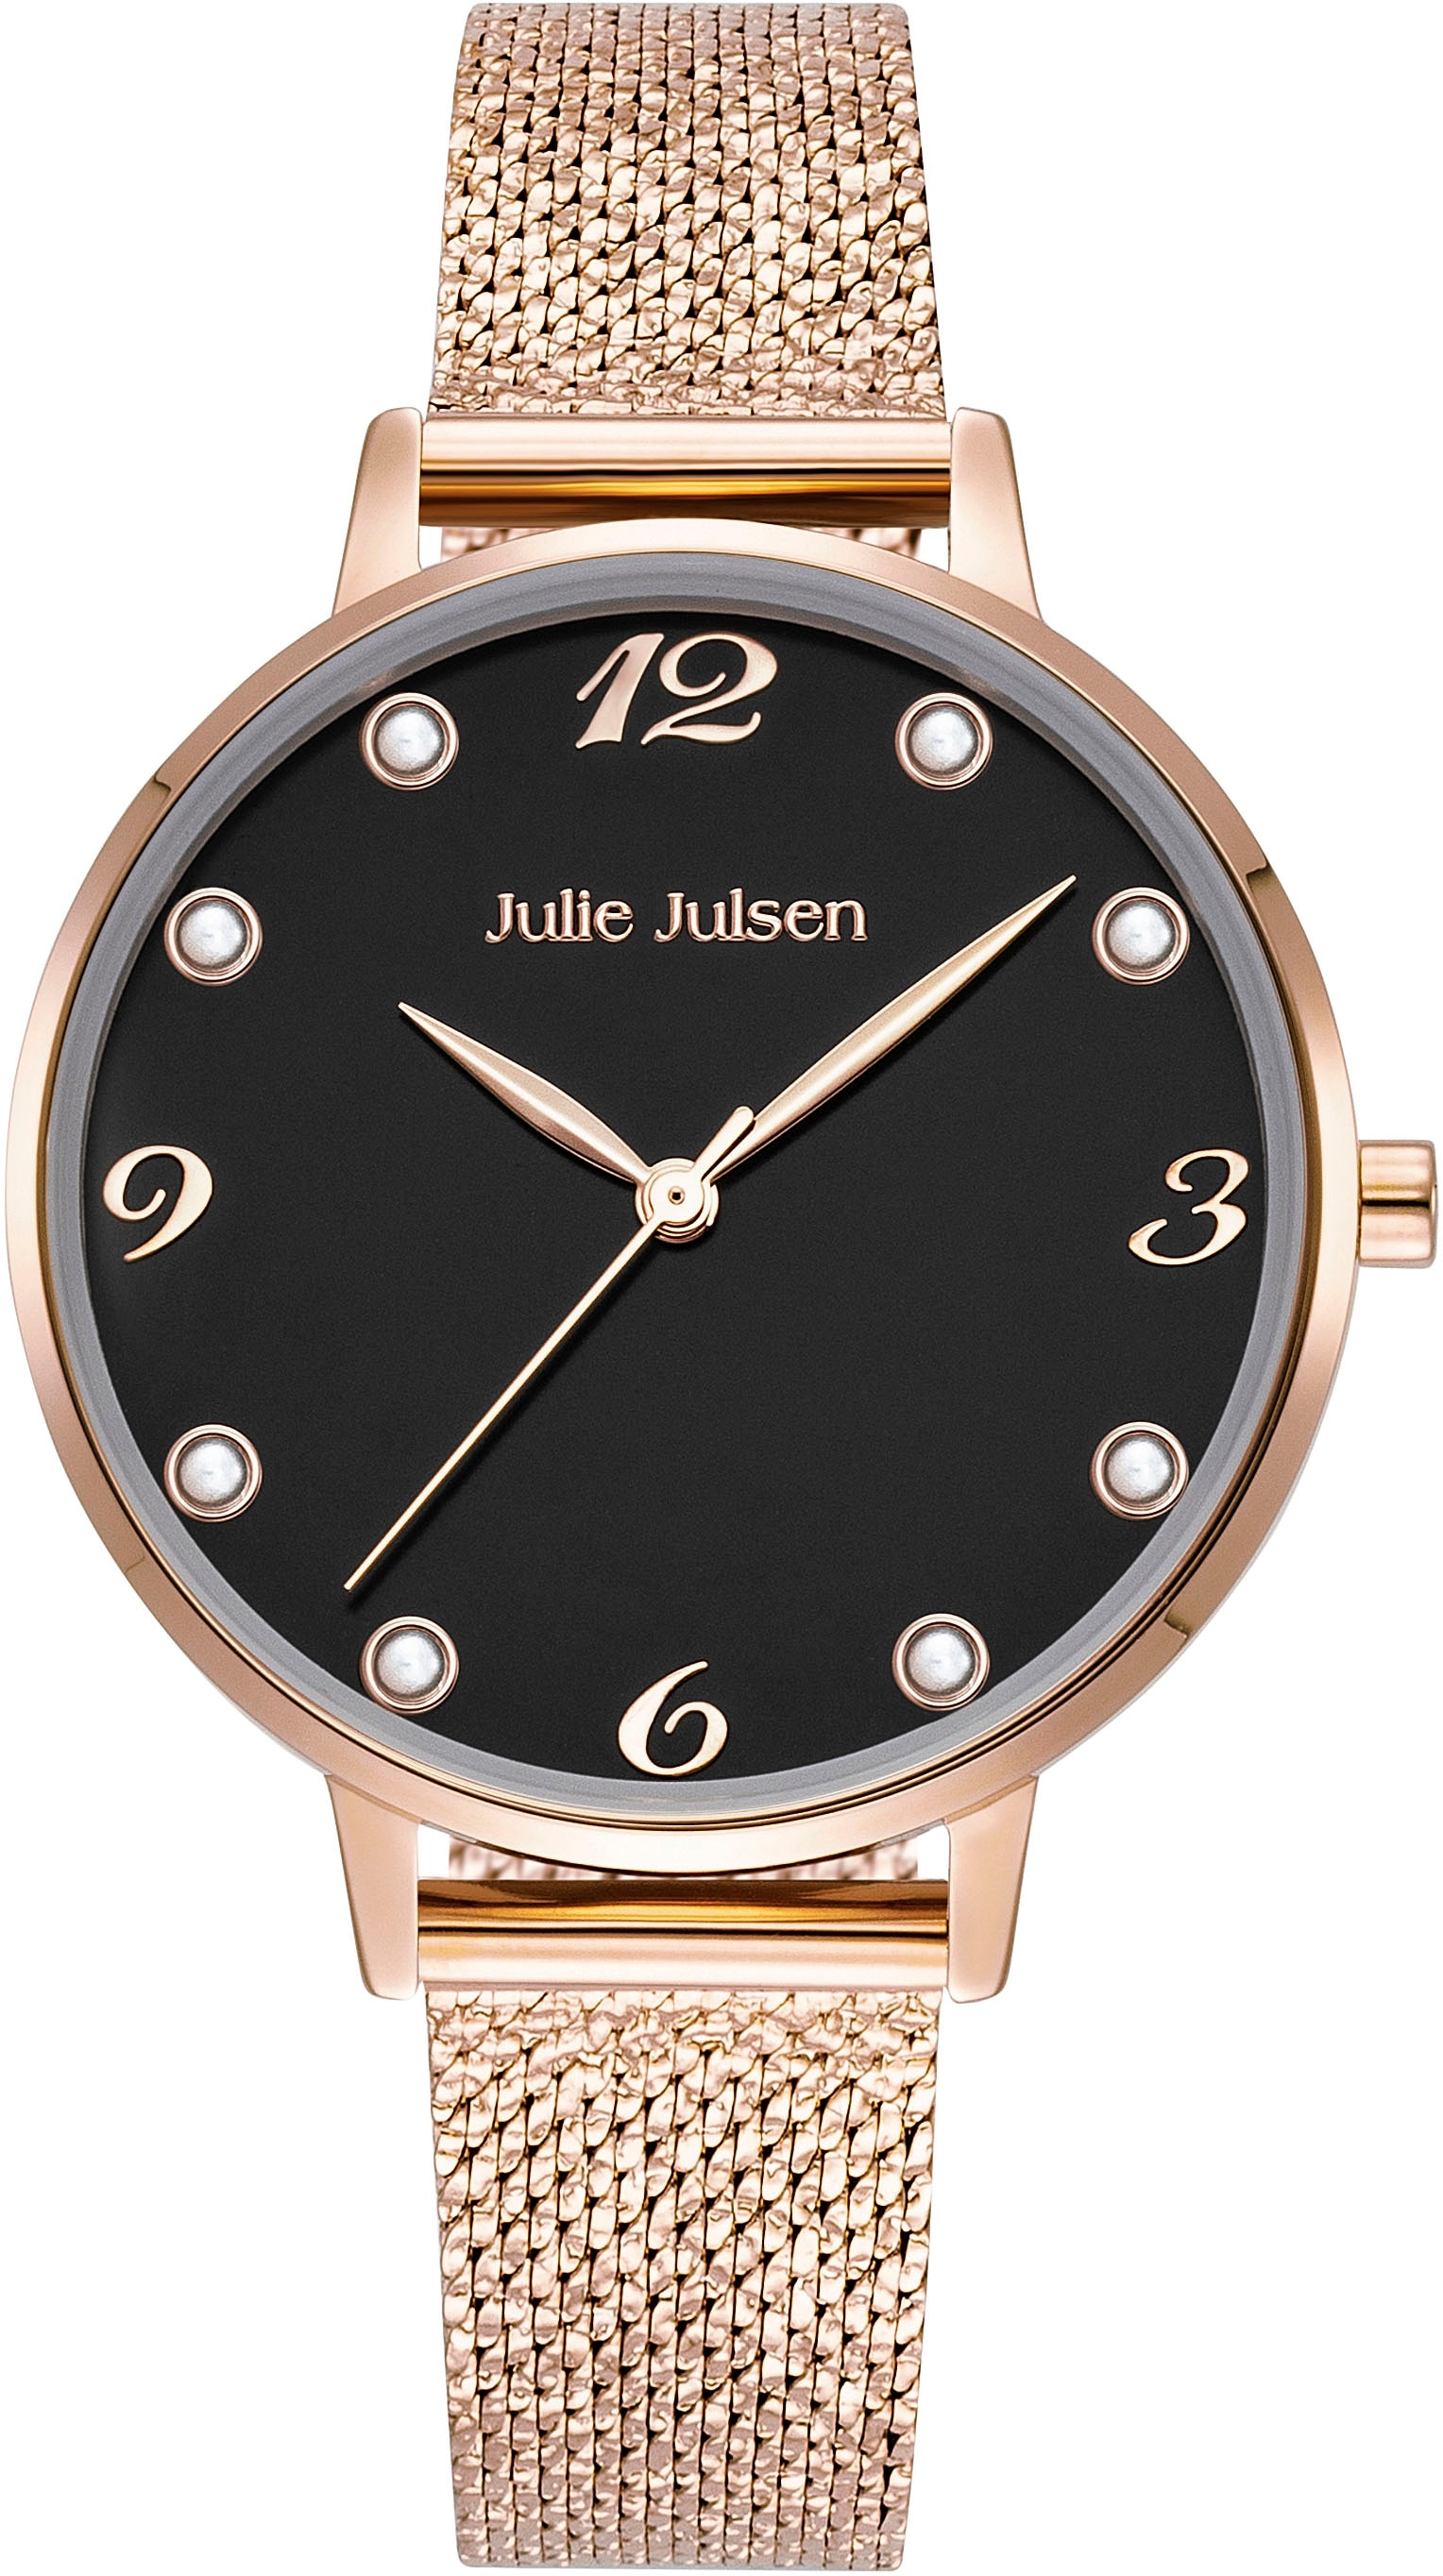 Julie Julsen Quarzuhr »Julie Julsen Pearl Black Rosé, JJW1008RGM-S«, Armbanduhr, Damenuhr, Perlen, PVD-beschichtet